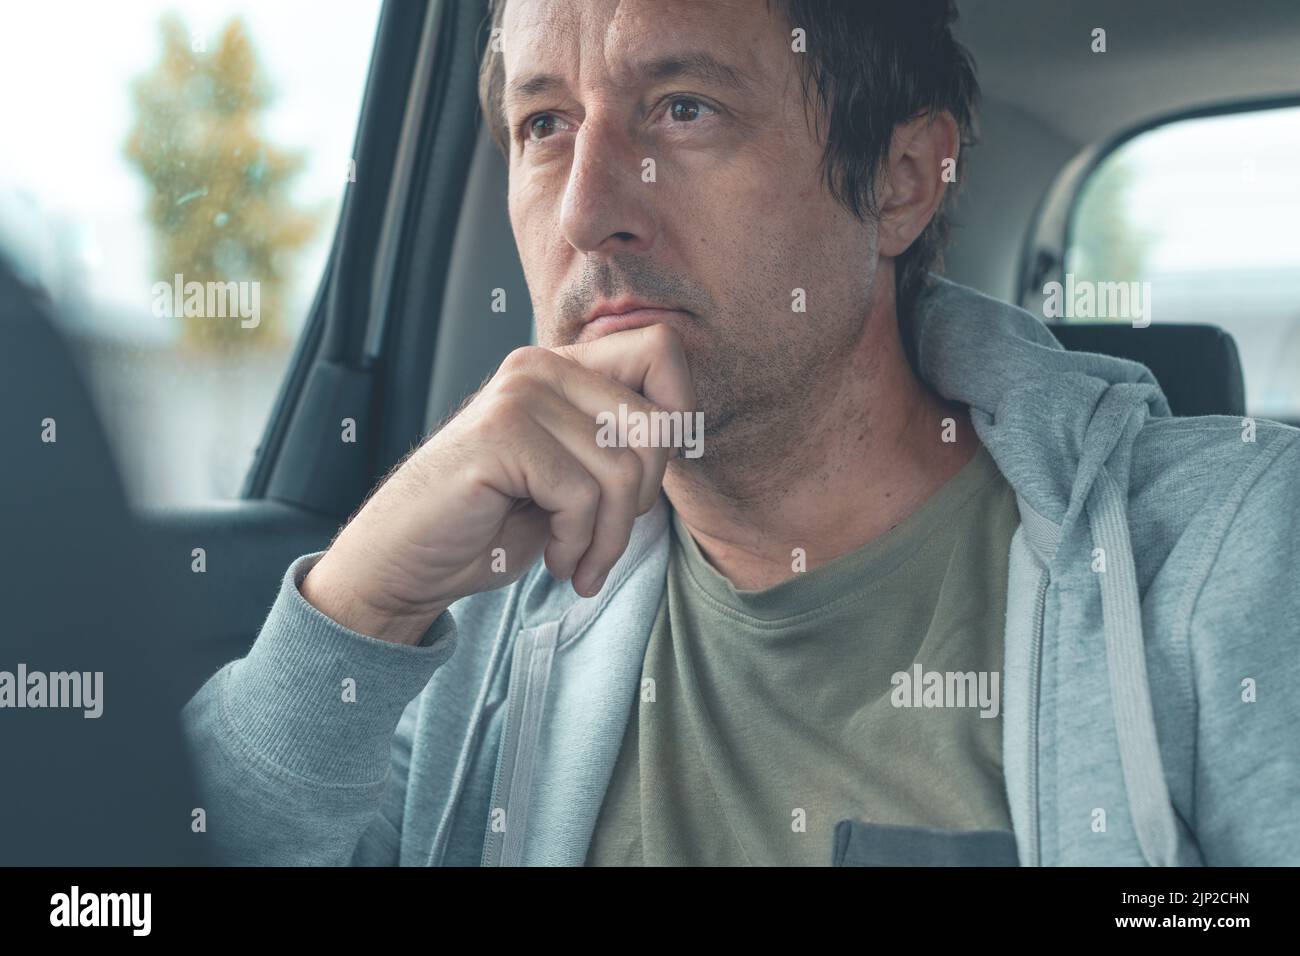 Hombre contemplativo con sudadera gris claro con capucha sentado en el asiento trasero del coche y pensando, enfoque selectivo Foto de stock